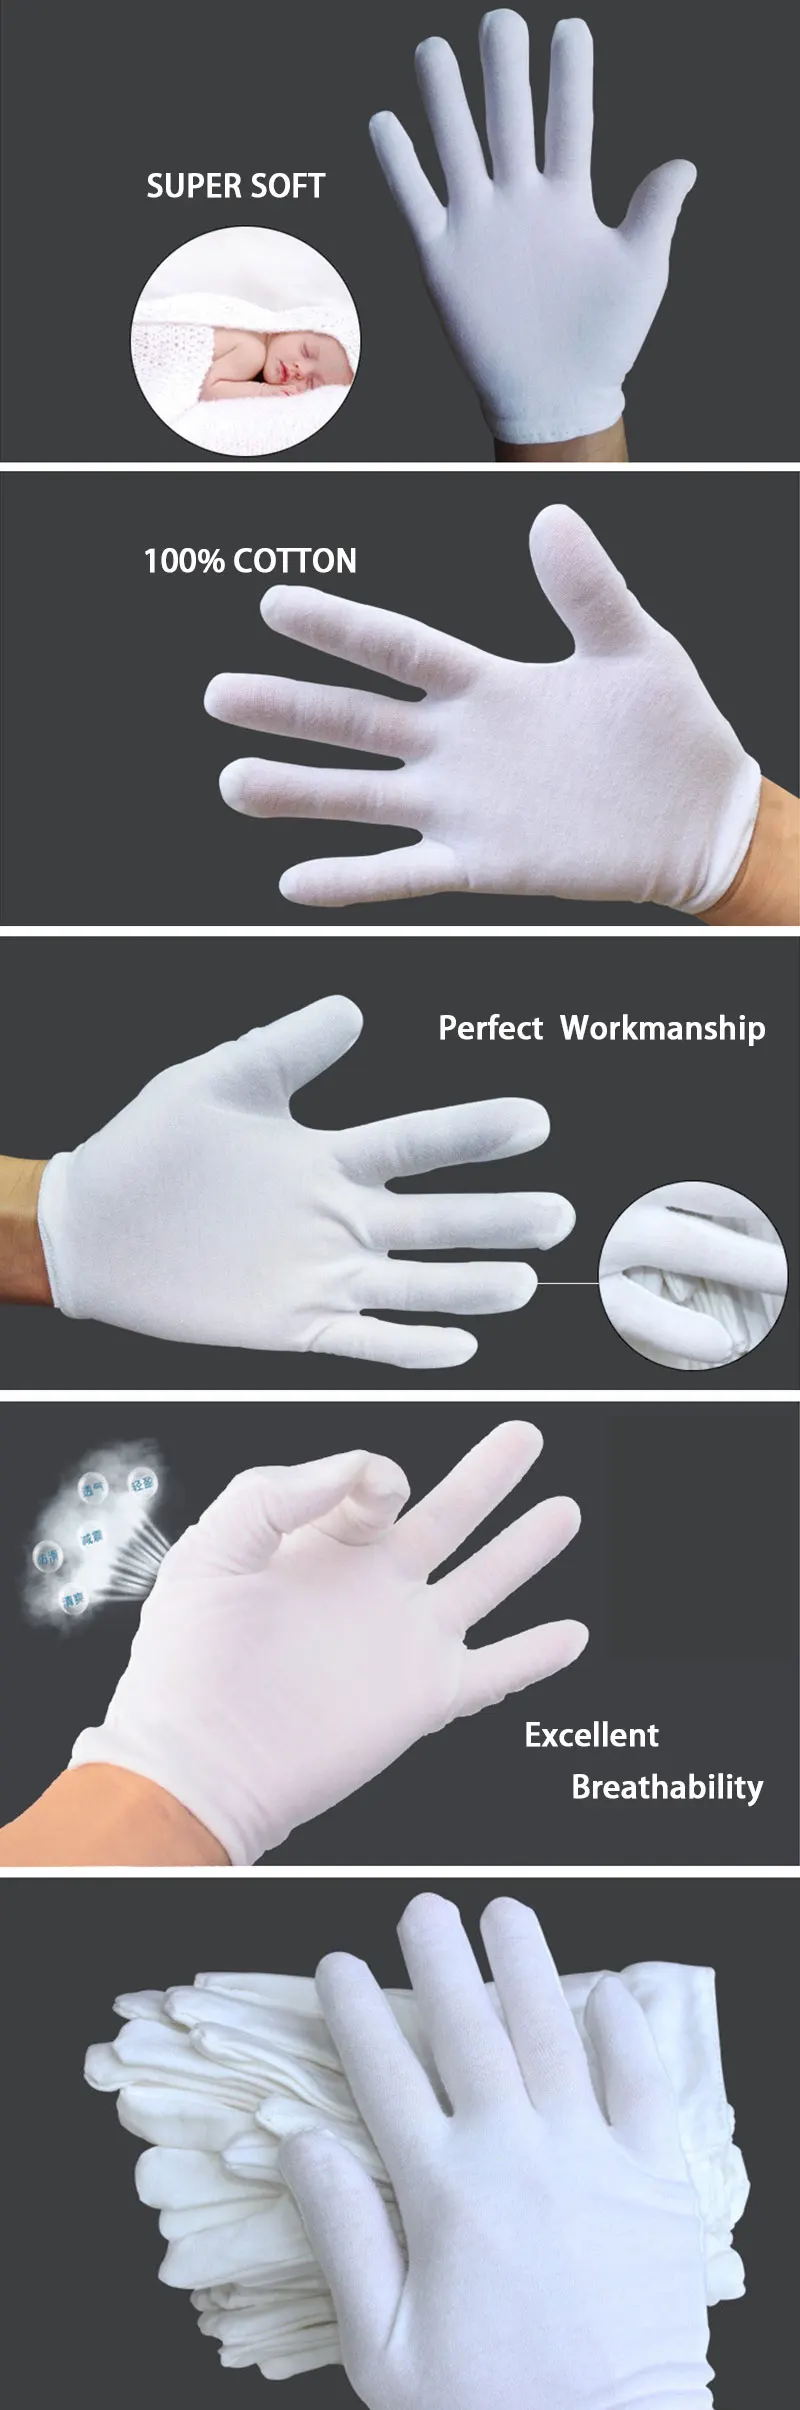 NMSafety белые хлопковые перчатки этикет рабочие перчатки для мужчин и женщин или детей